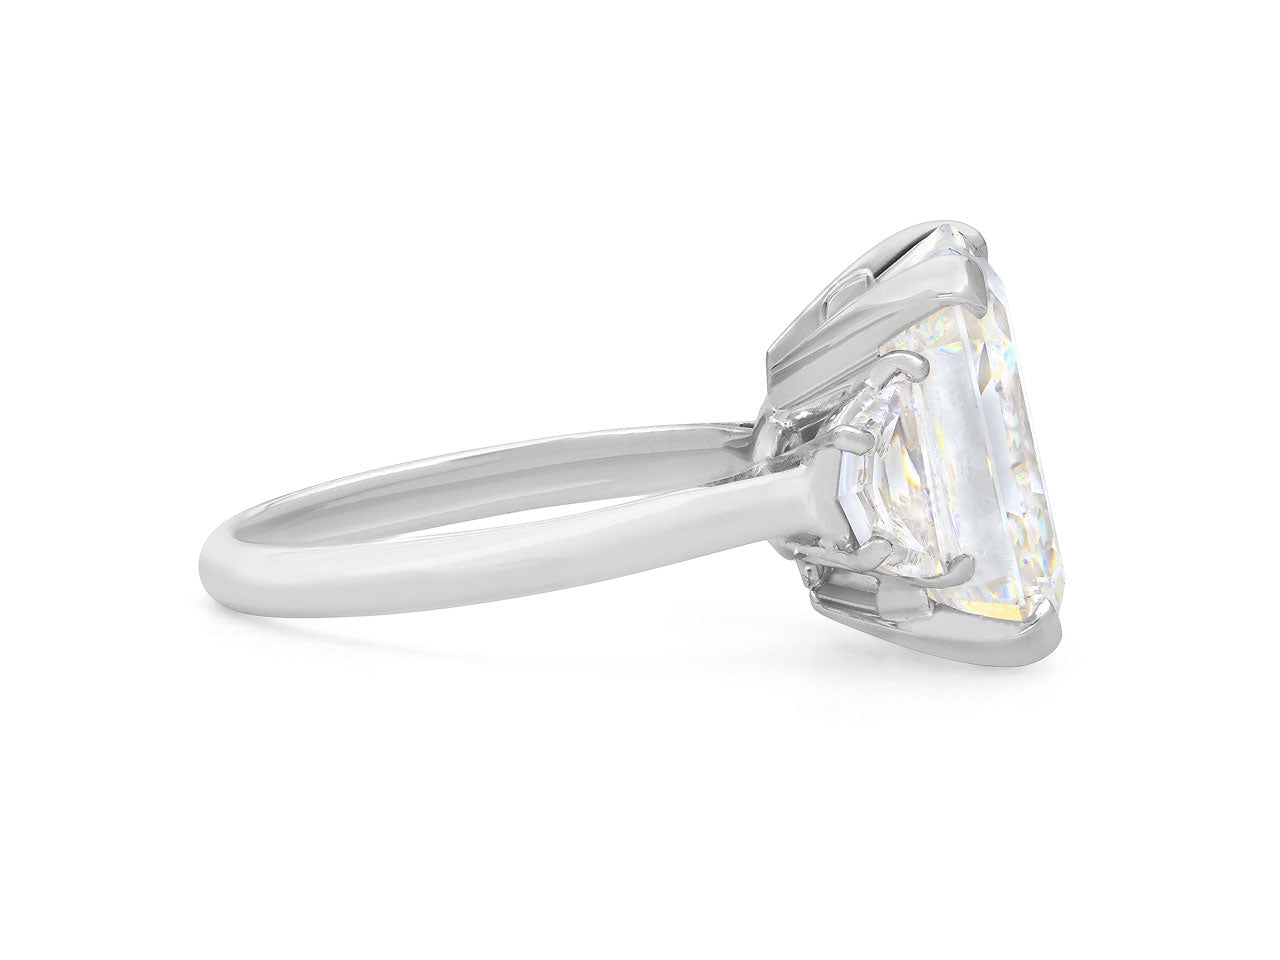 Emerald Cut Diamond Ring, 8.32 carat F/SI1, in Platinum